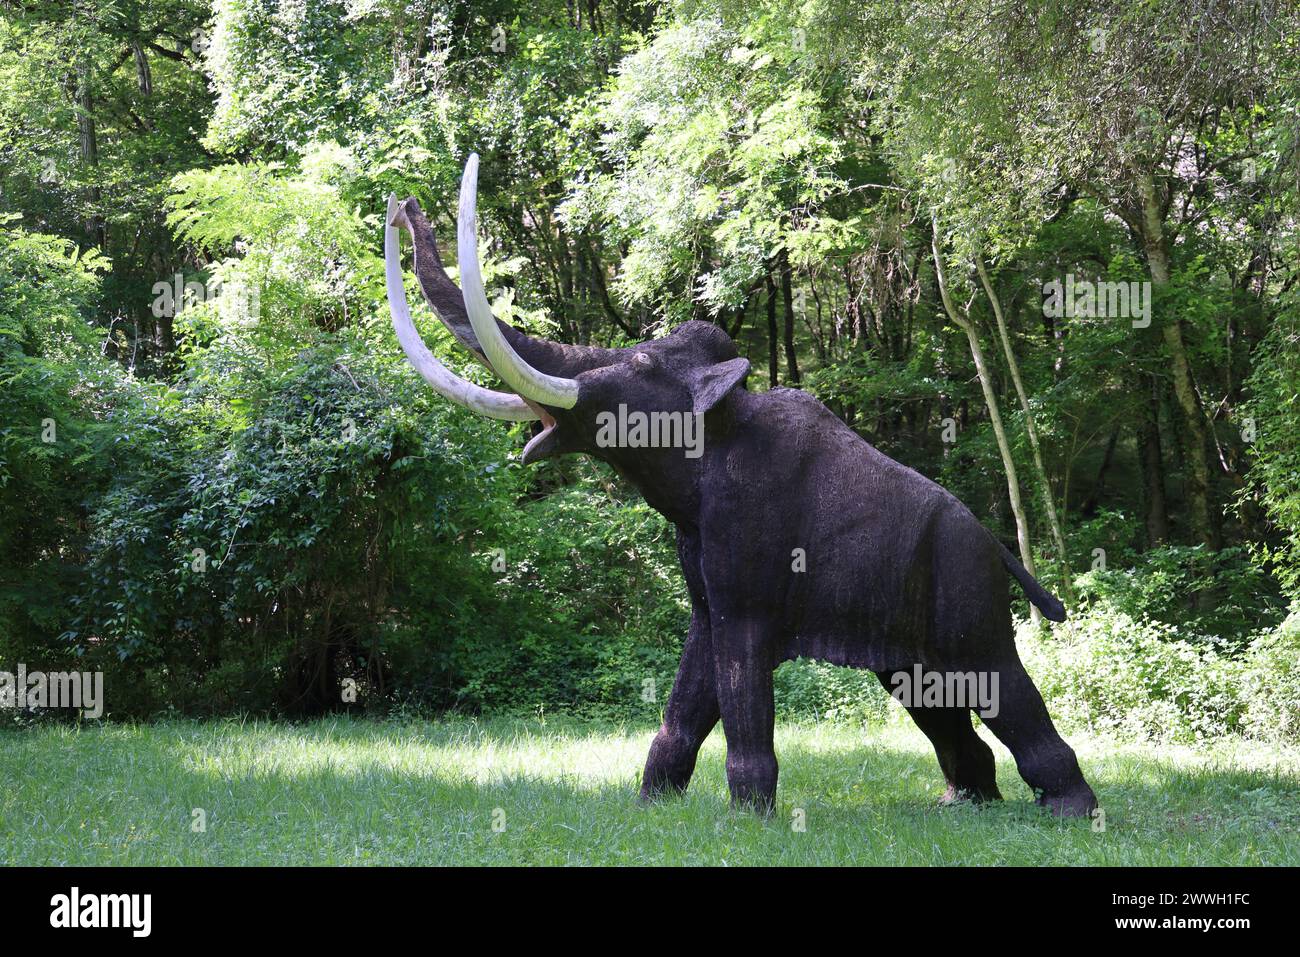 Caccia durante la preistoria: Mammut e ricostituito caccia al mammut al parco Prehisto nella valle del fiume Vézère nel Périgord Noir. Tursac, Périgo Foto Stock